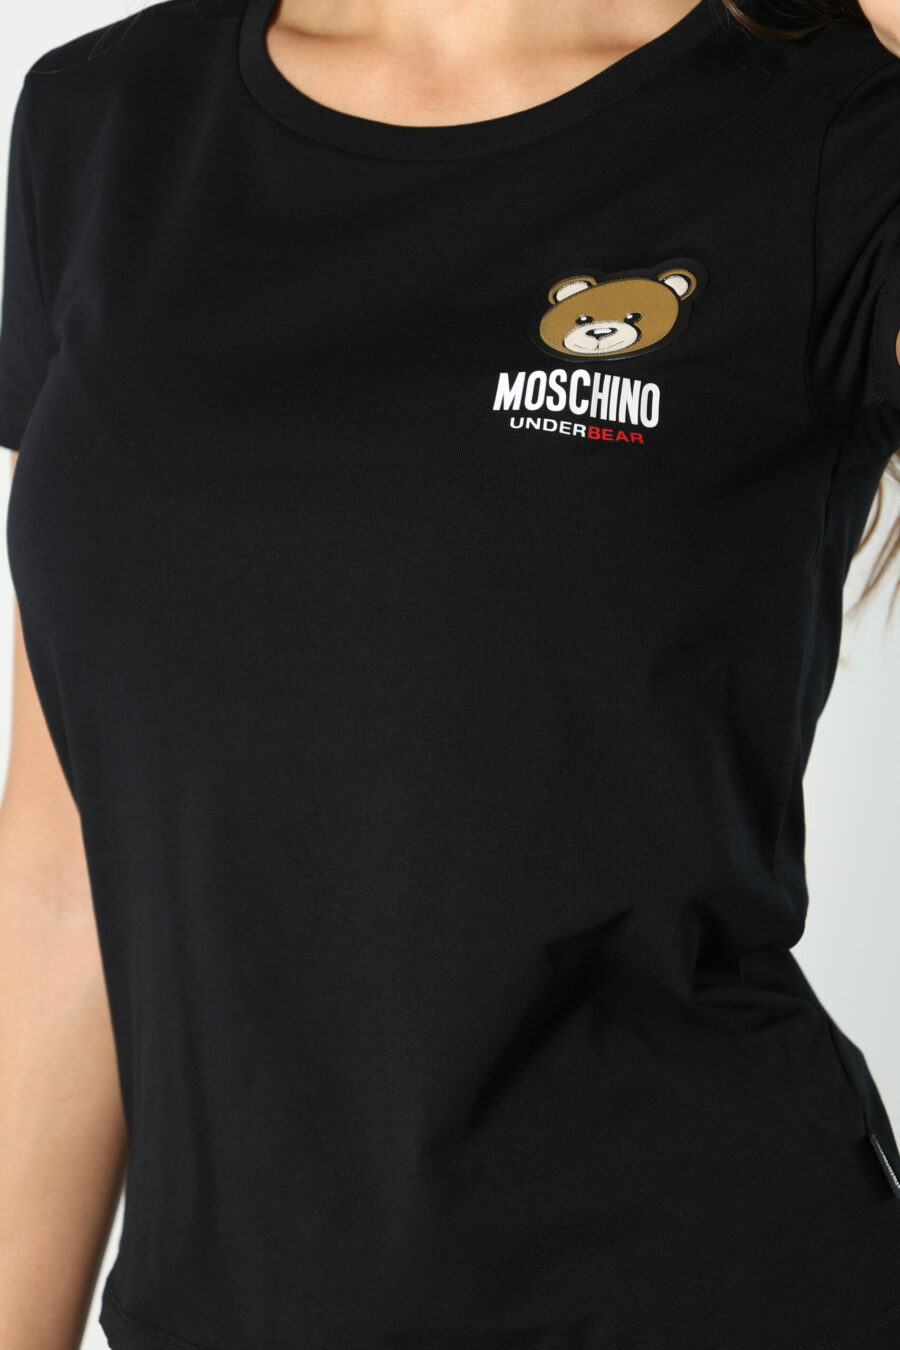 Schwarzes T-Shirt mit Logo-Bärenaufnäher "underbear" - 8052865435499 61 skaliert